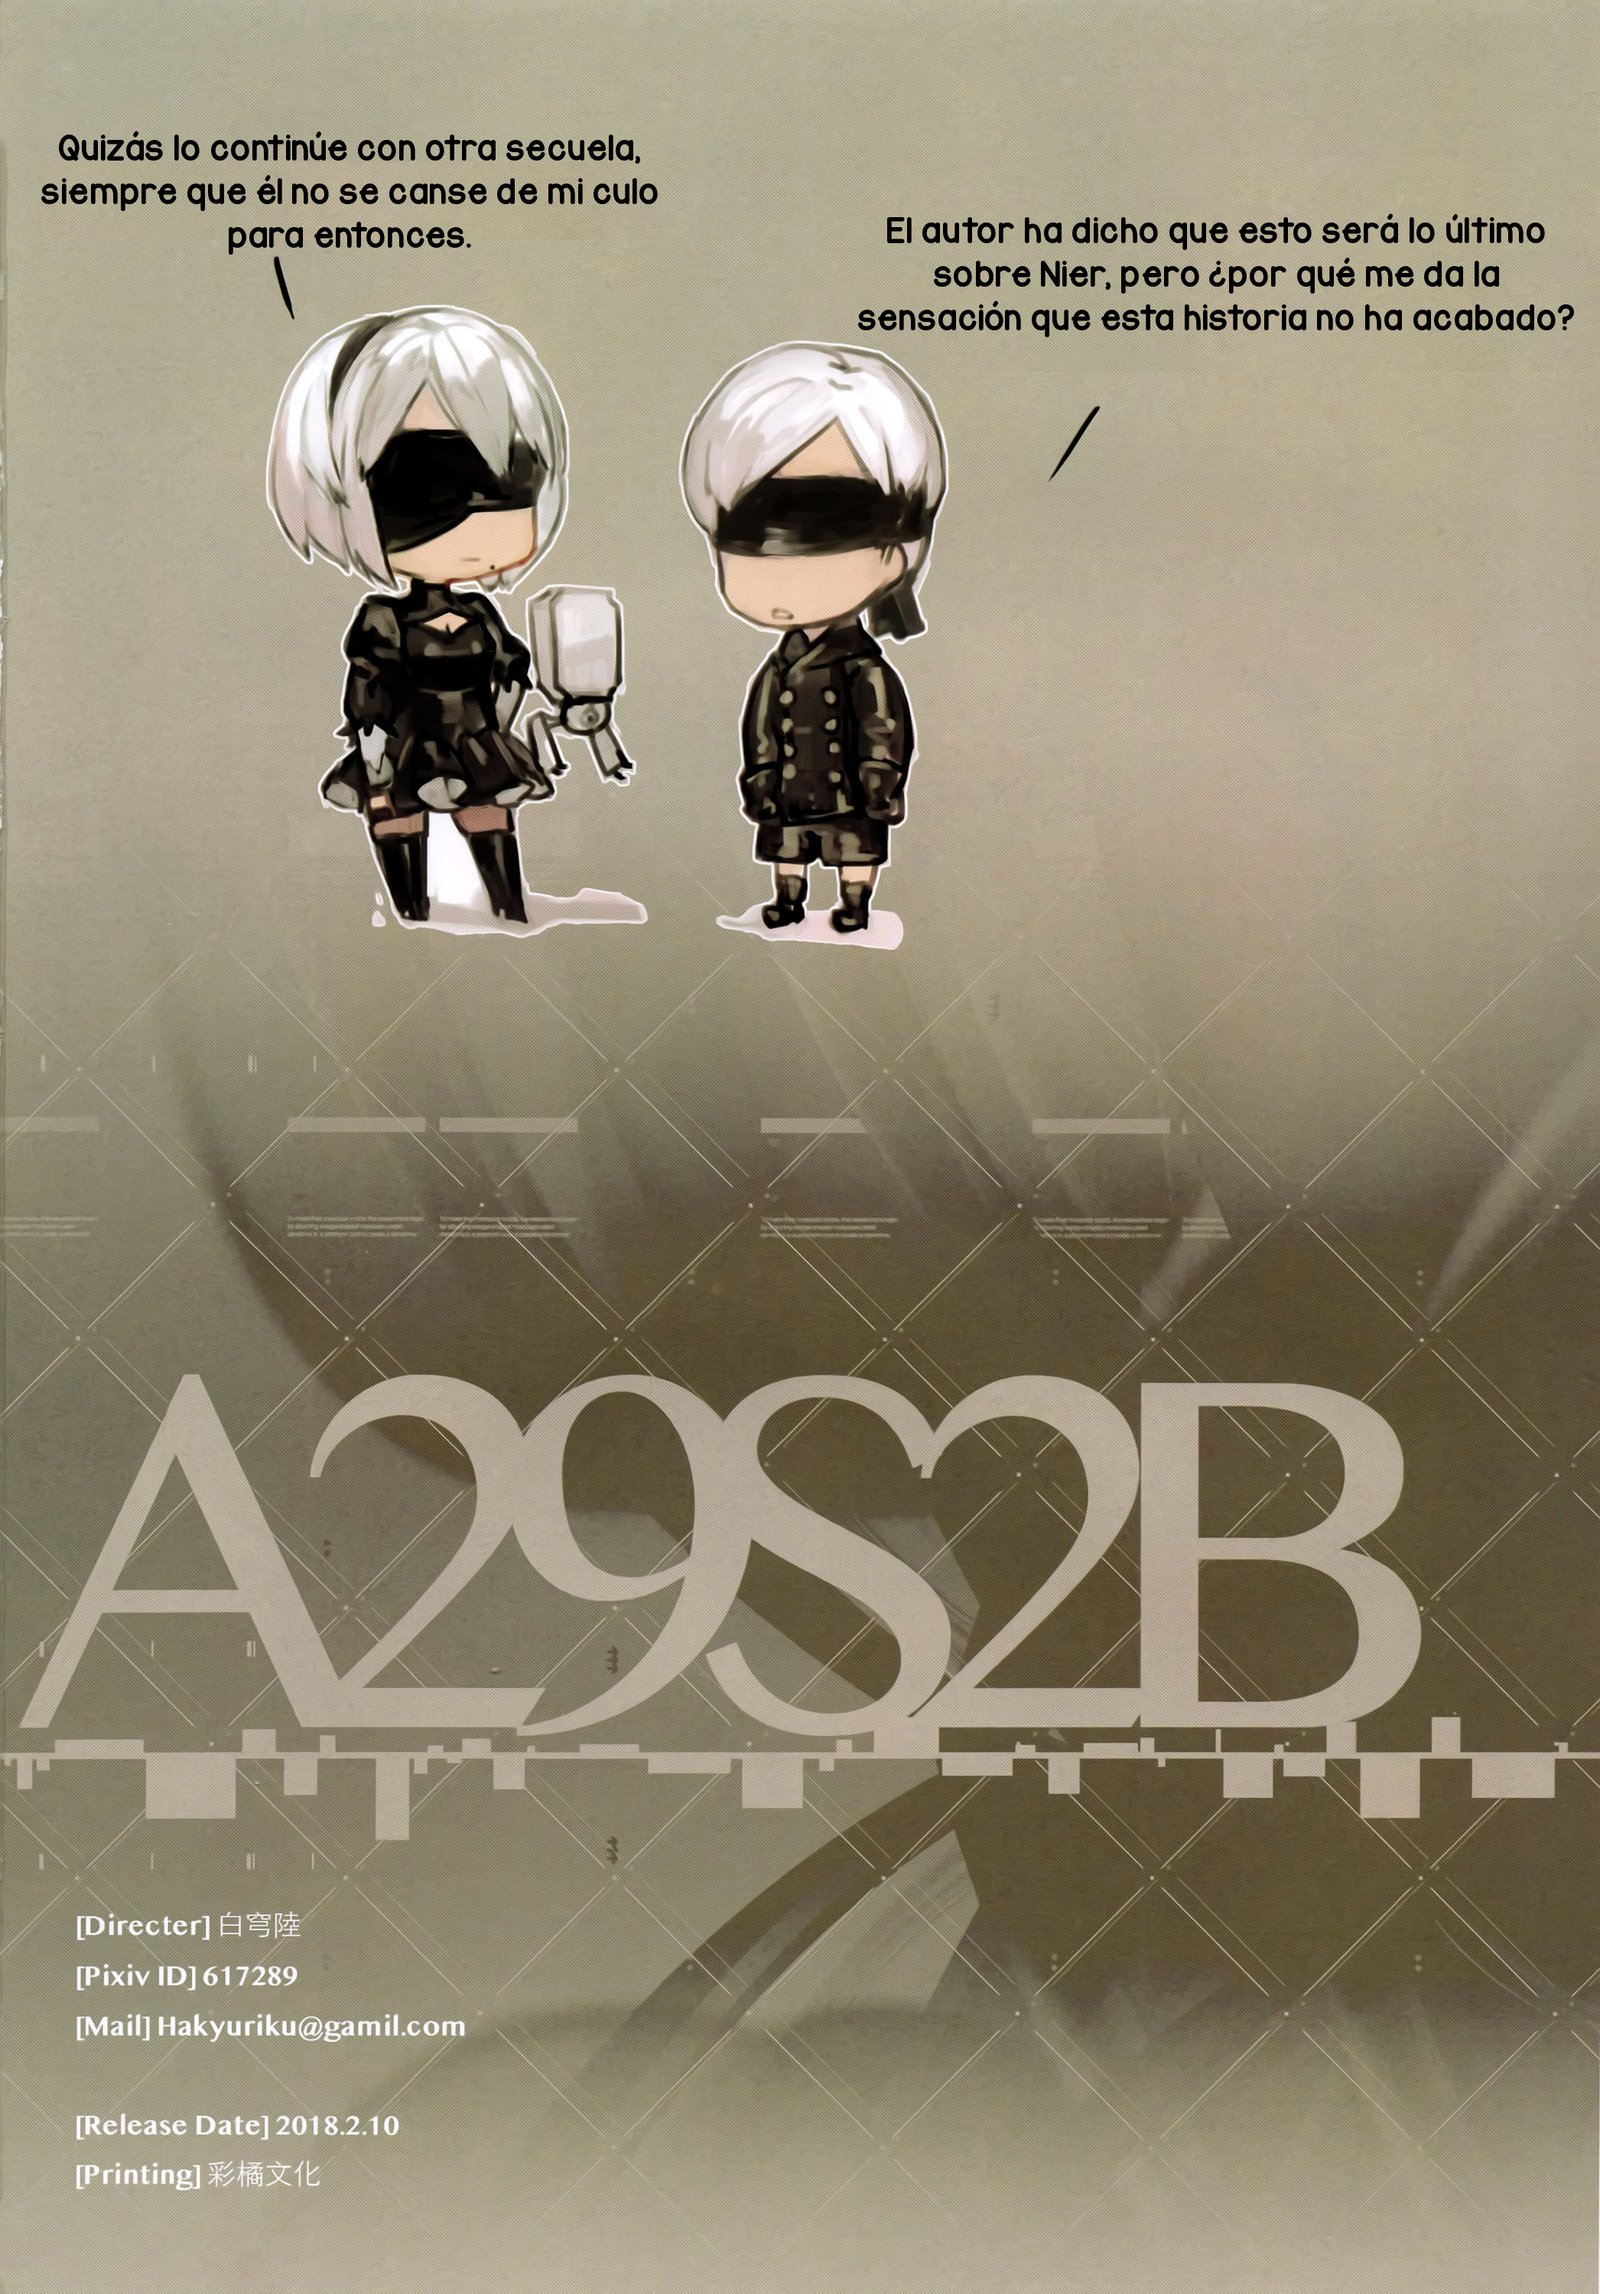 A29S2B (NieR:Automata)